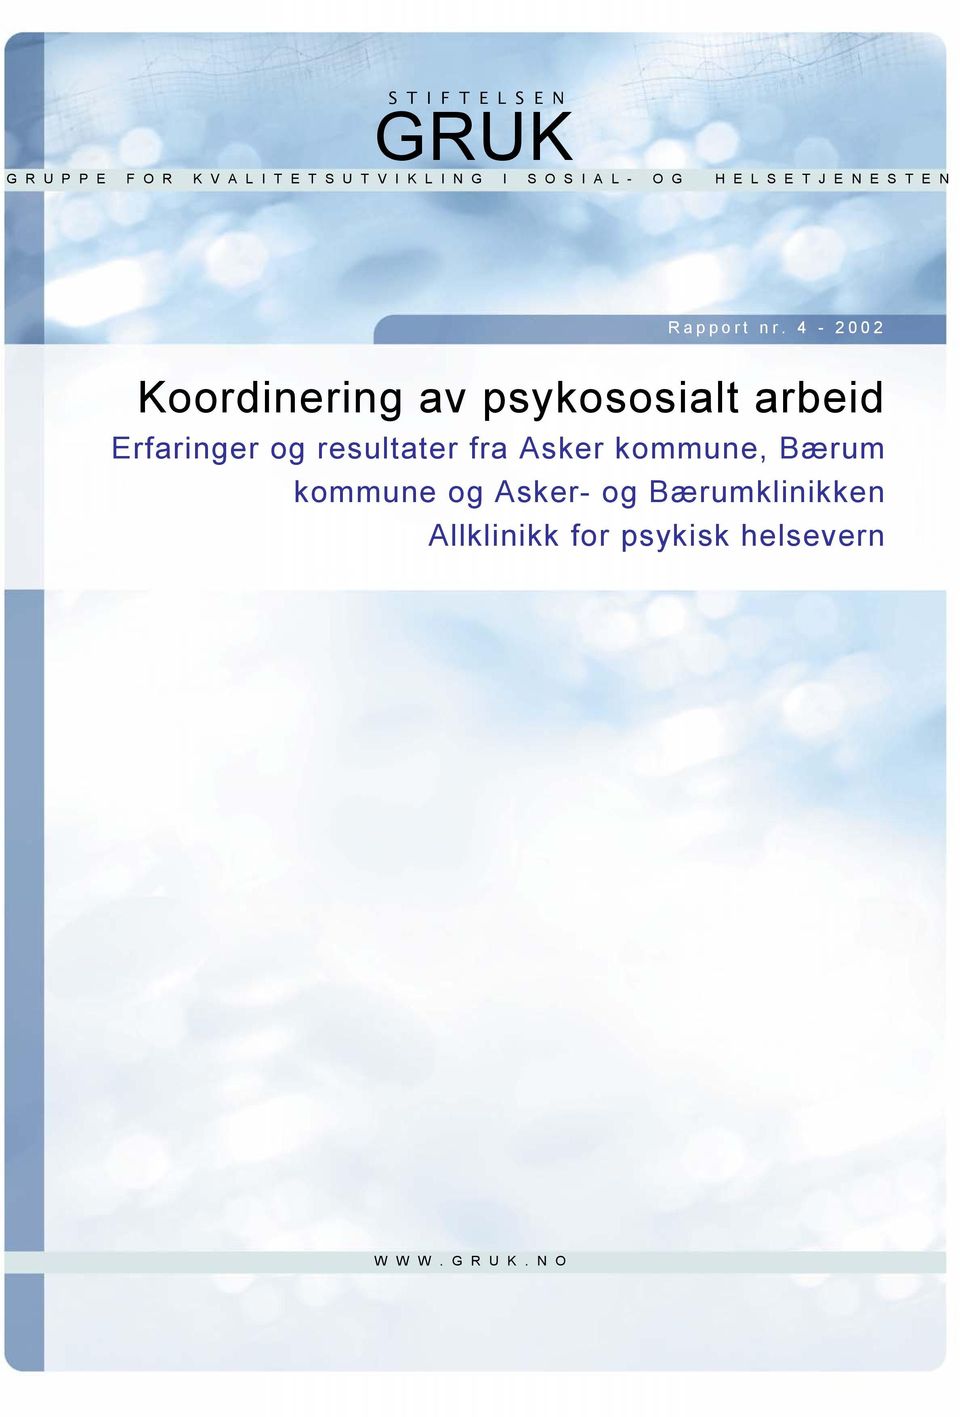 4-2002 Koordinering av psykososialt arbeid Erfaringer og resultater fra Asker